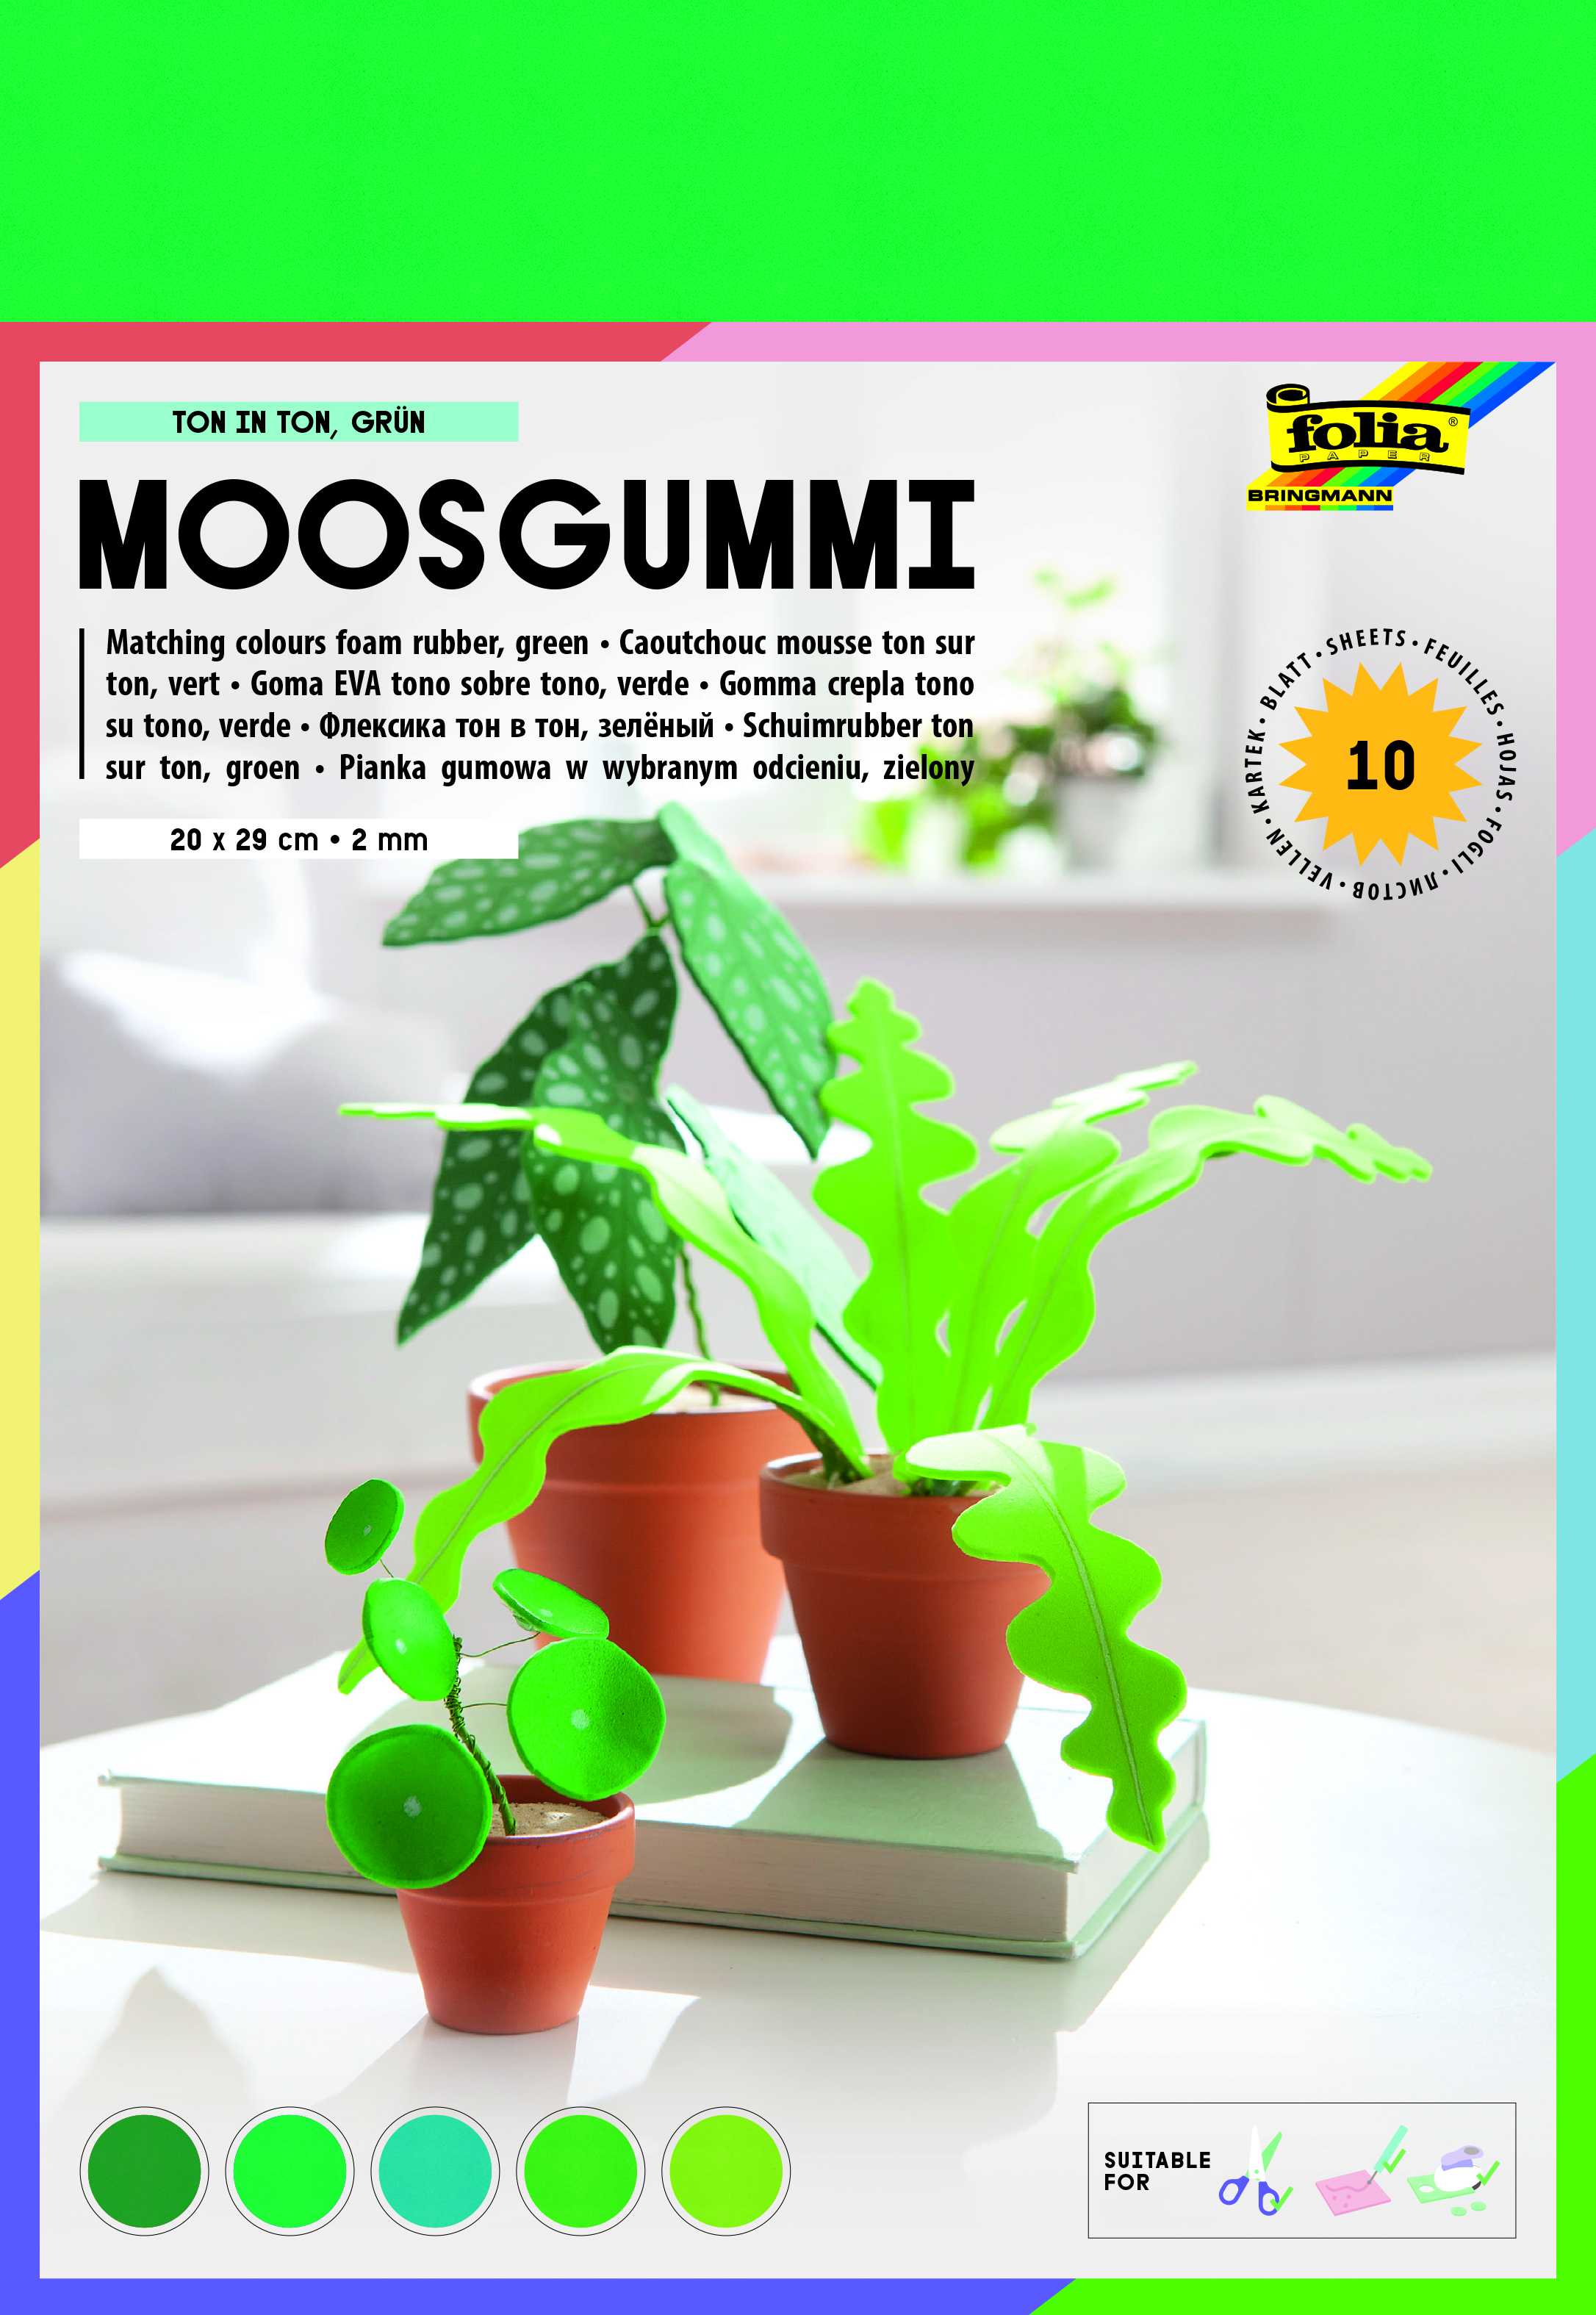 Moosgummi green